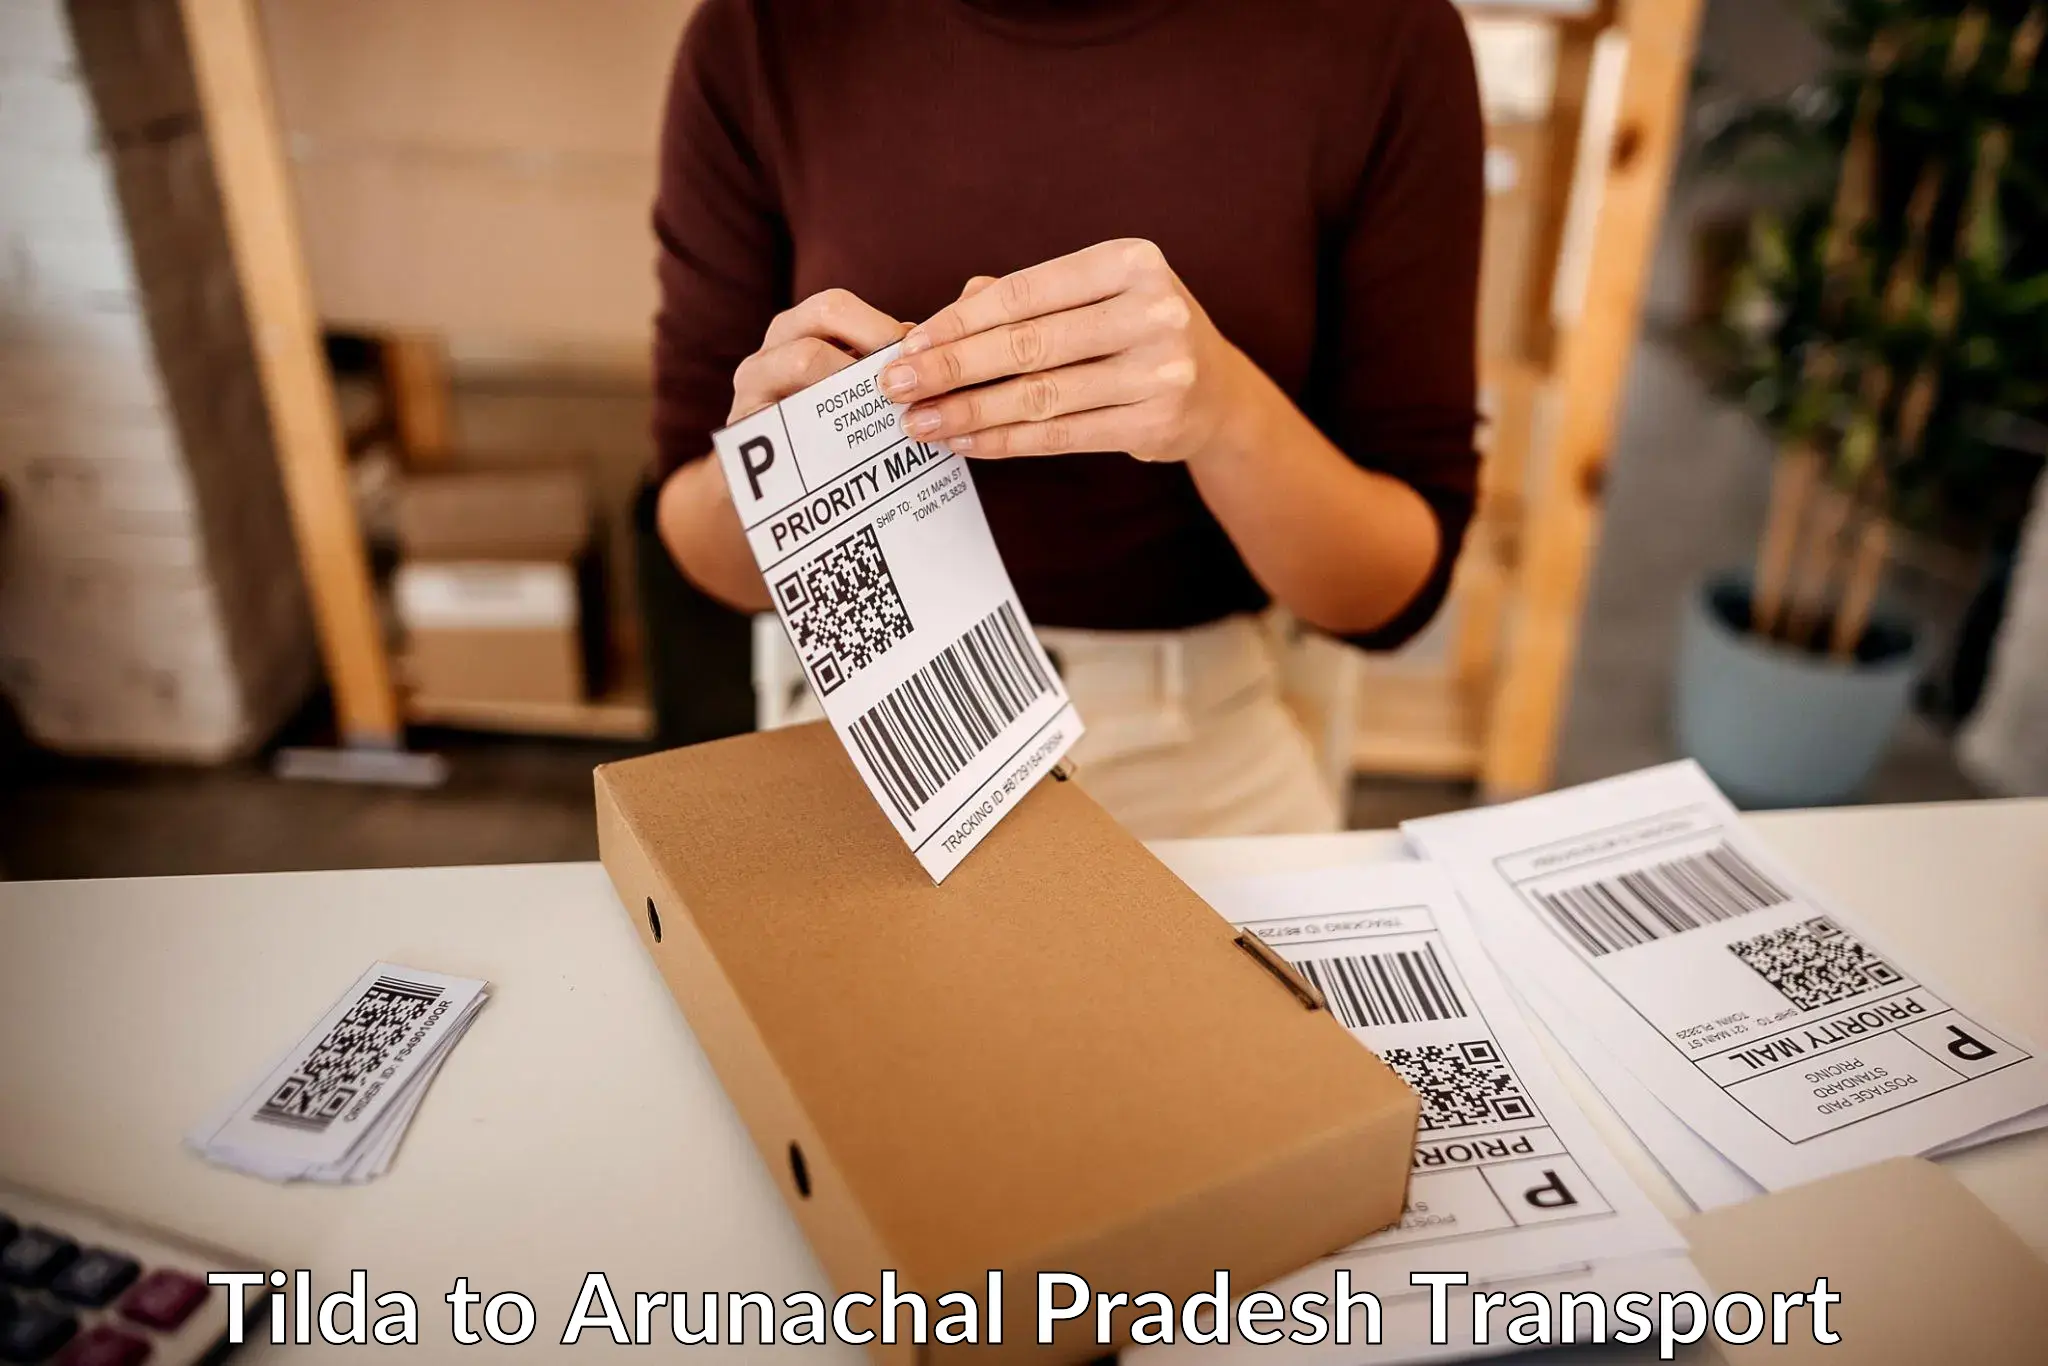 Furniture transport service Tilda to Arunachal Pradesh